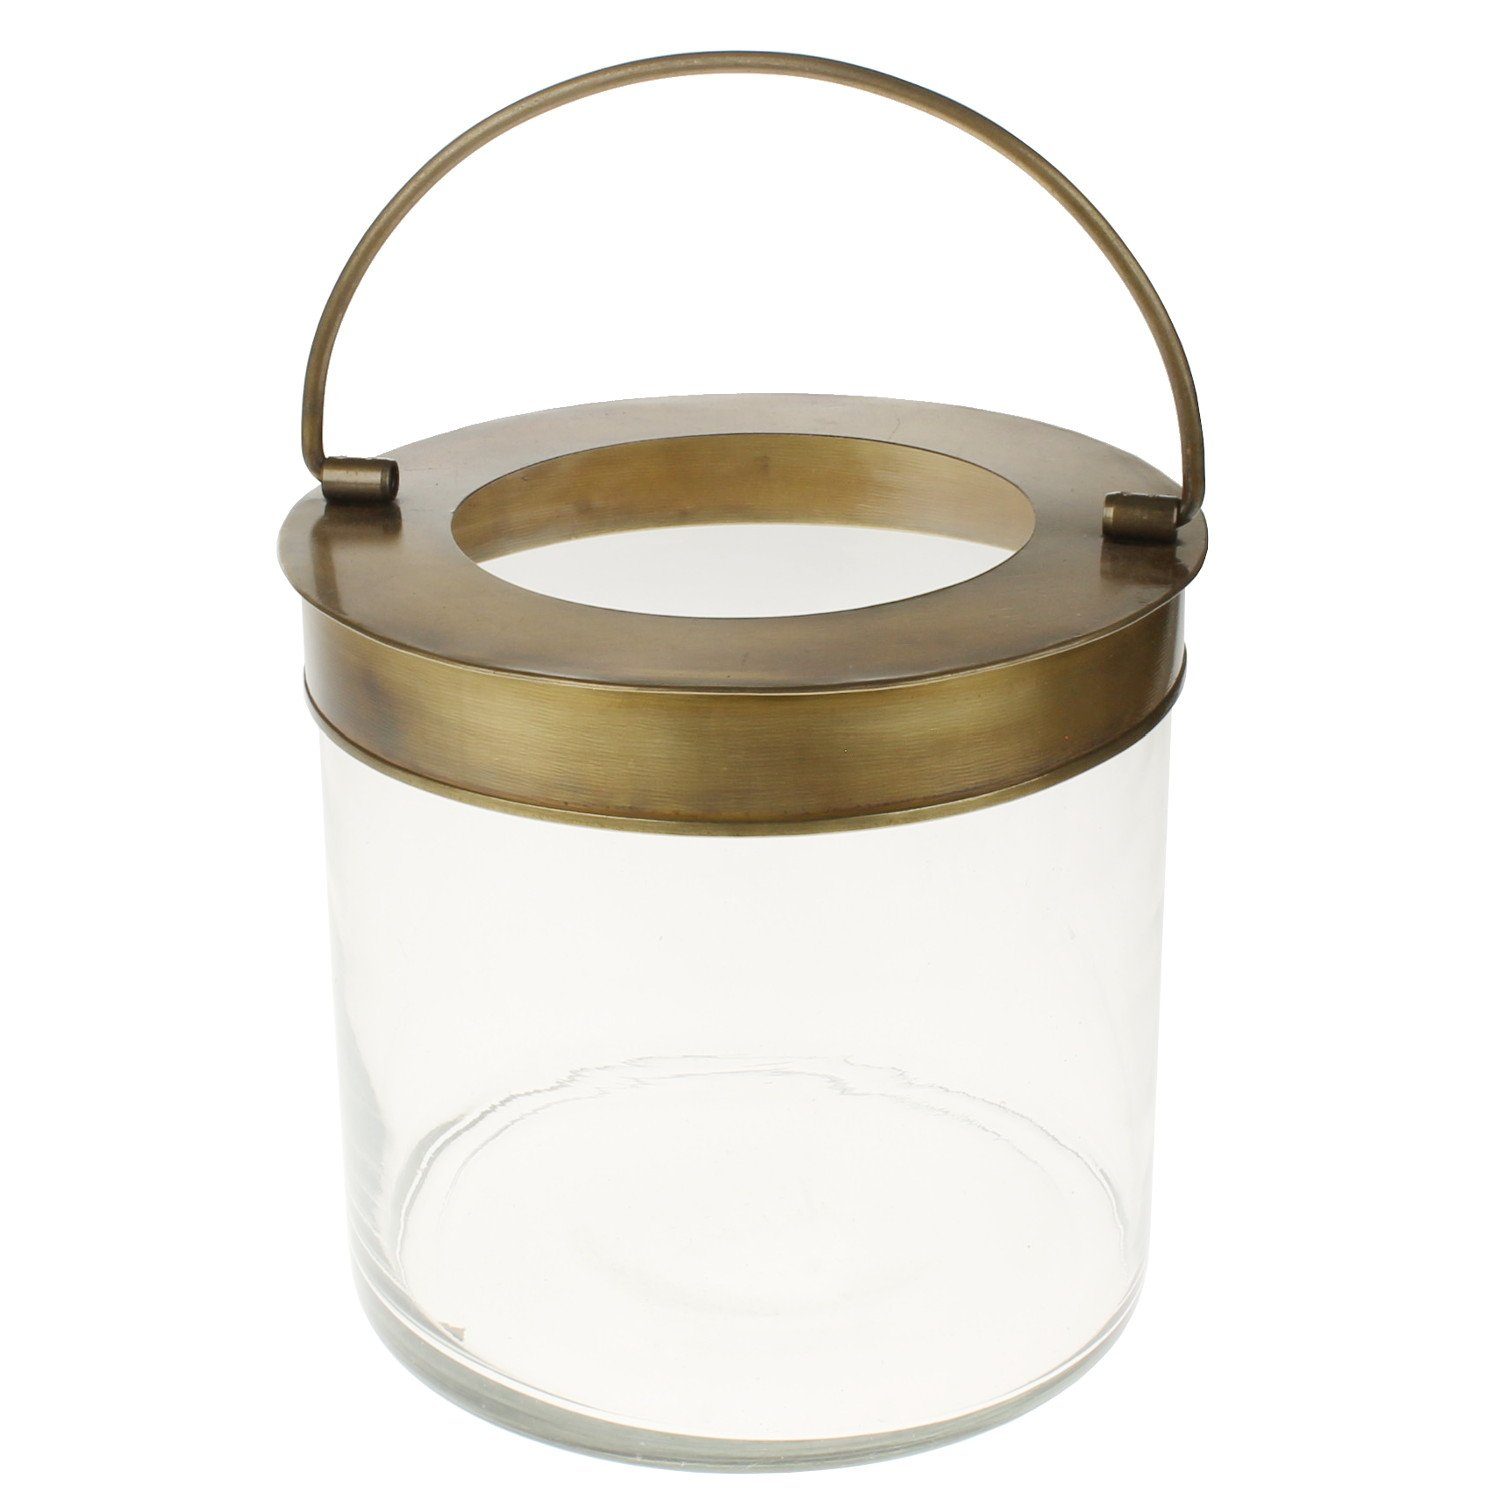 Macosa Home Windlicht Glas Metall Gold Messing, Dekowindlicht Kerzenhalter Tischdekoration Laterne Dekolaterne